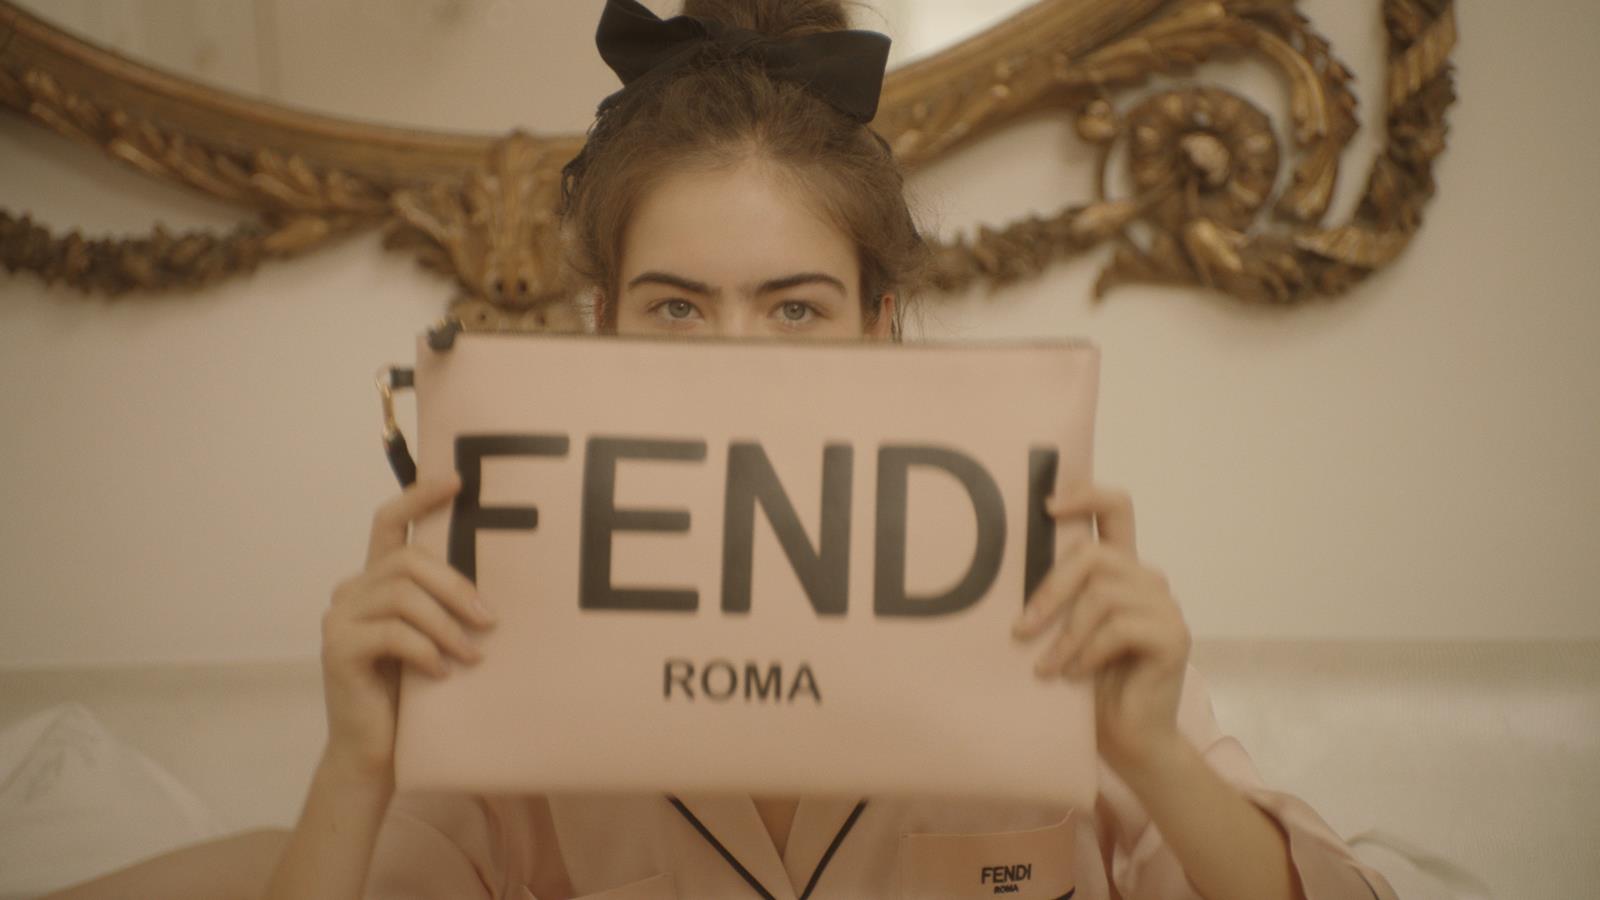 FENDI ROMA